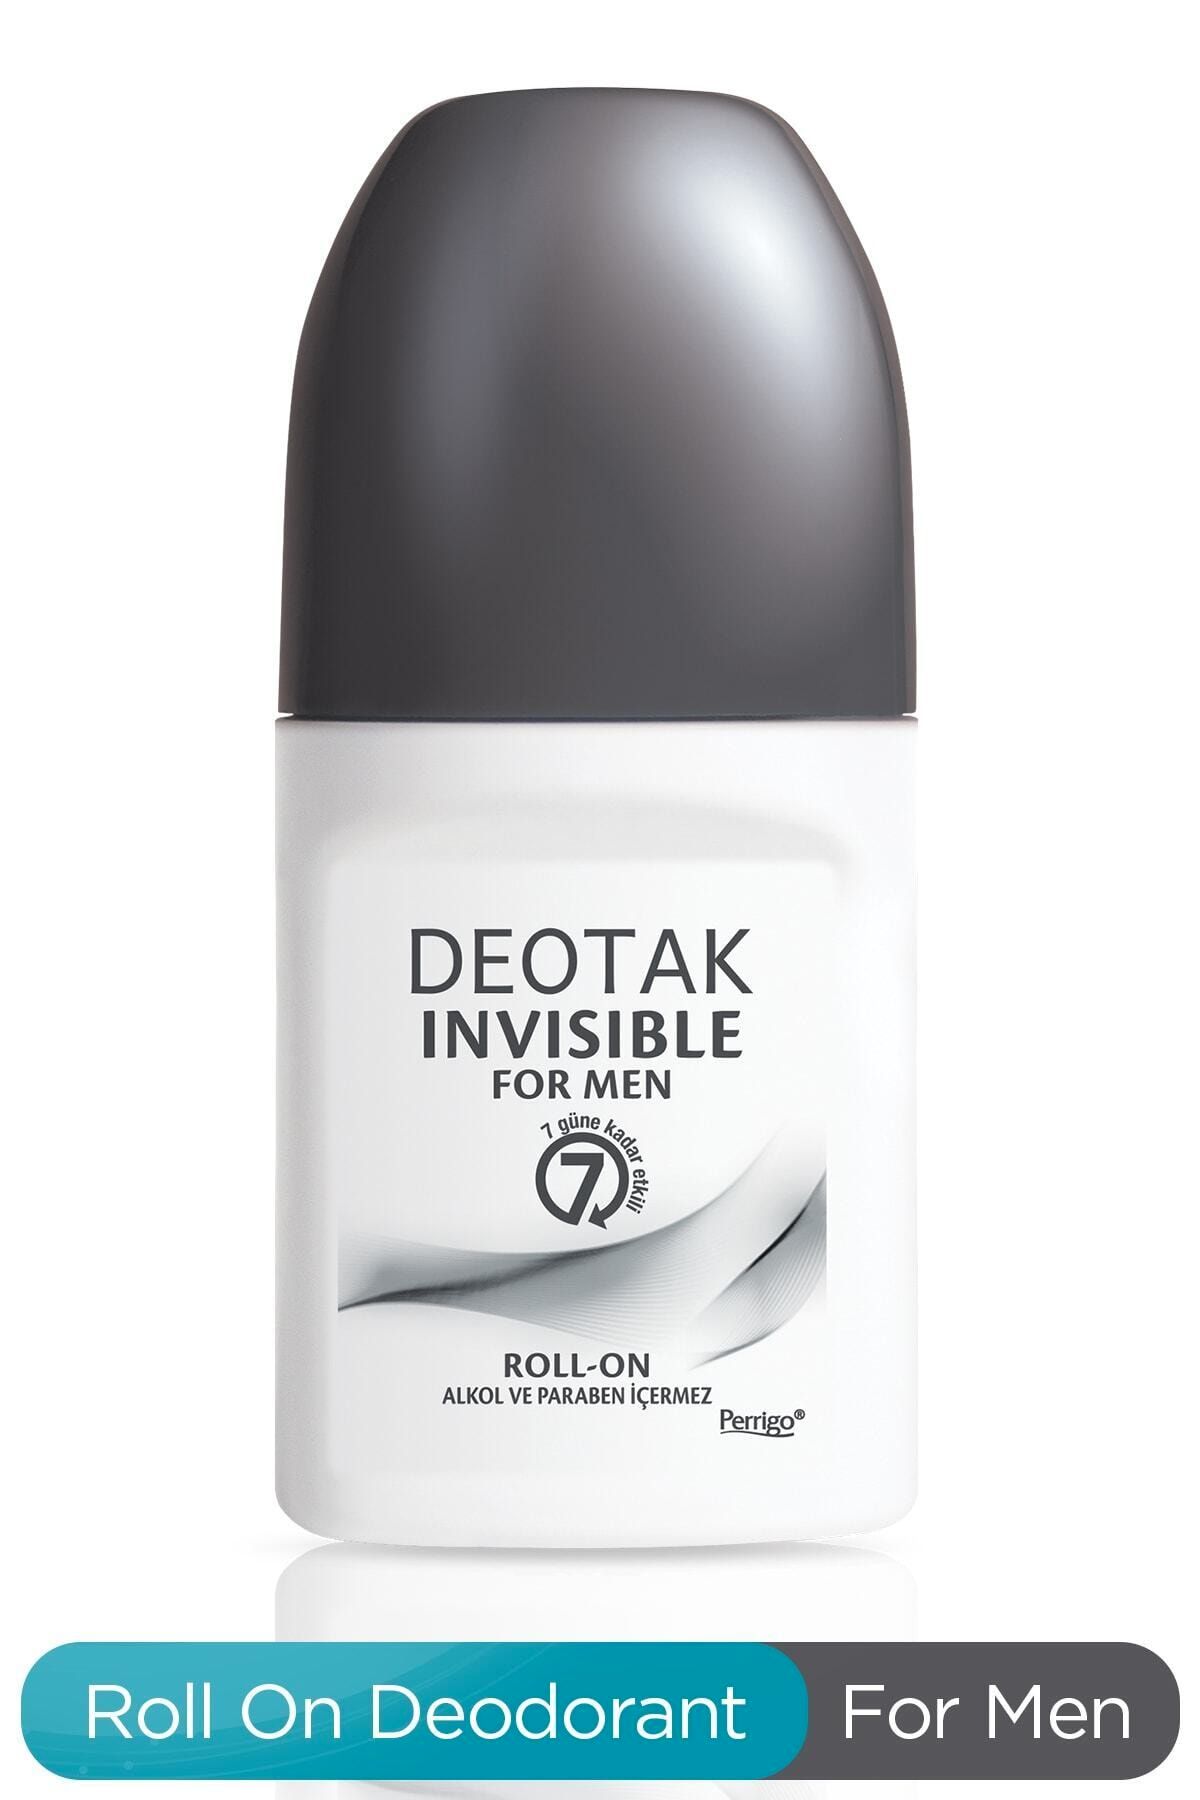 Sebamed Deotak Erkekler Için Invisible Roll-on Deodorant For Men - 35 ml.